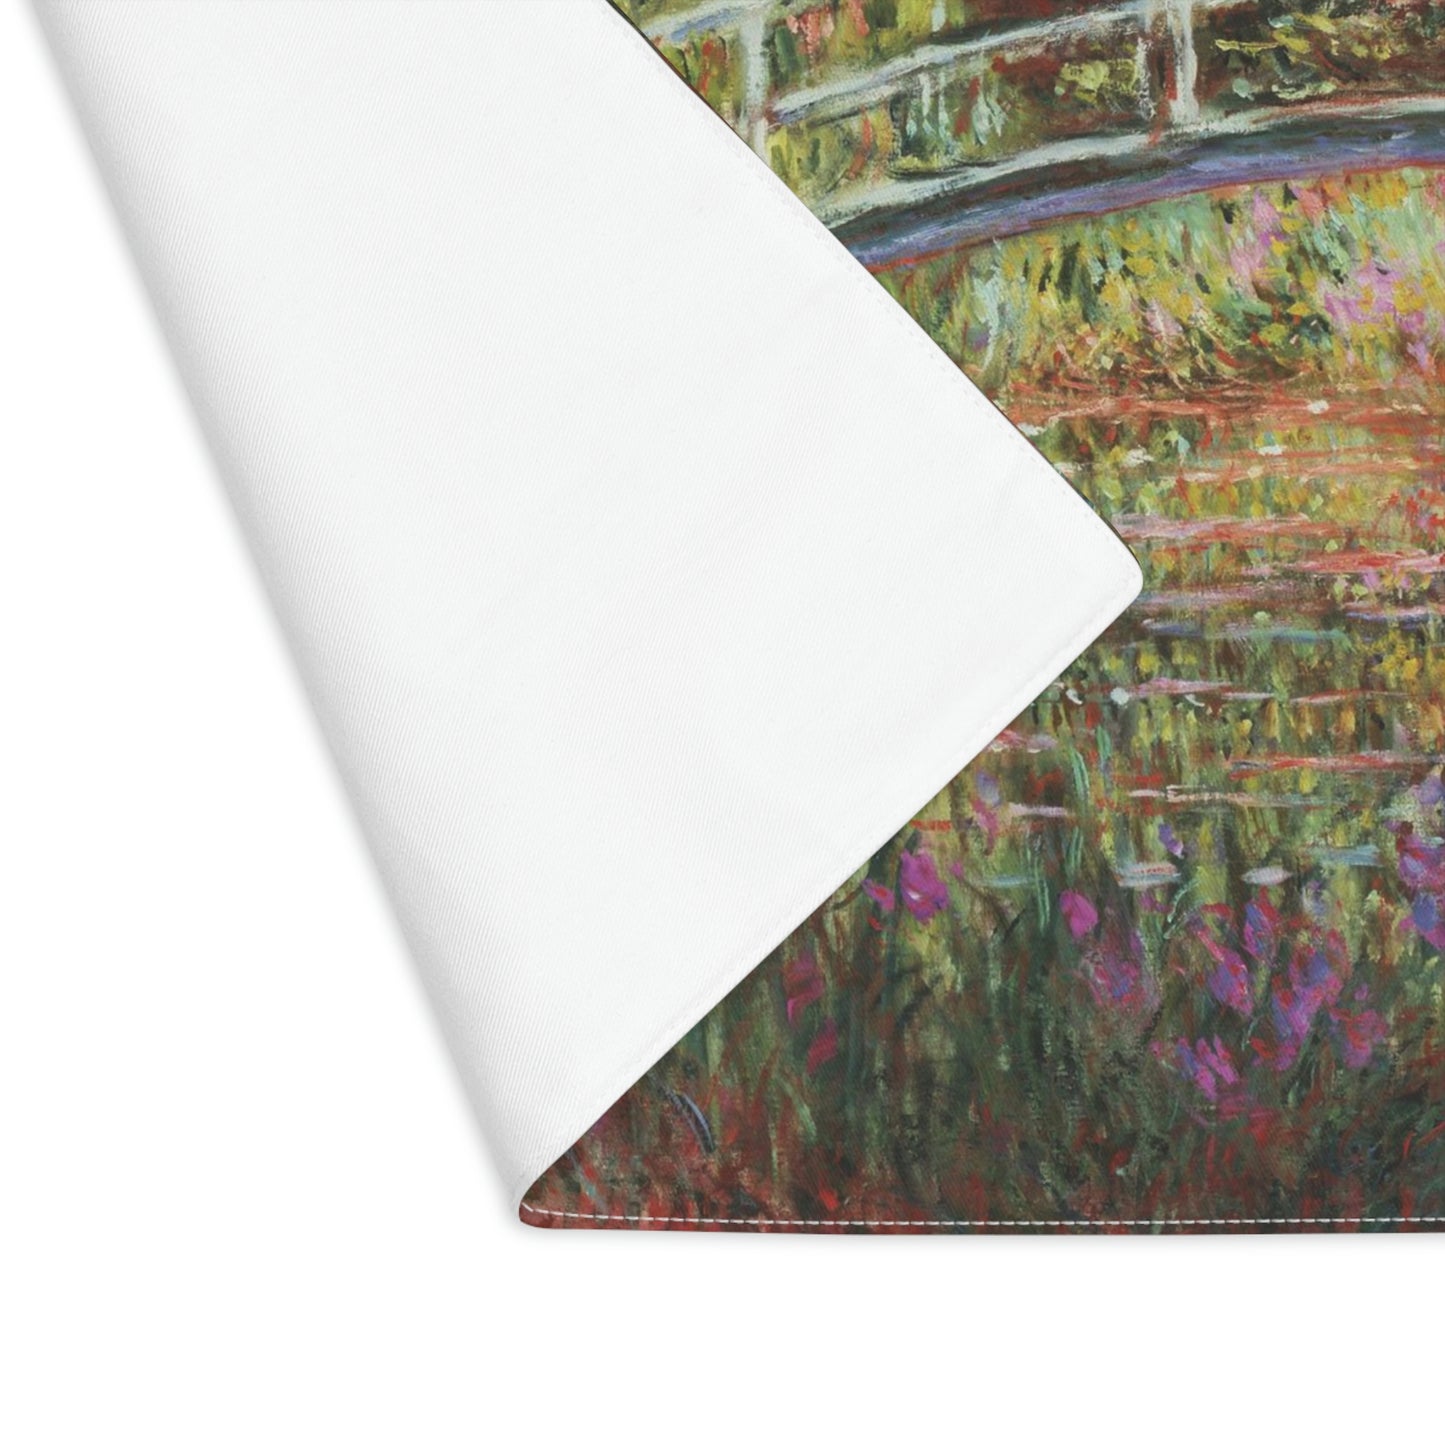 Claude Monet: "Le Pont Japonais" - Placemat, 1pc